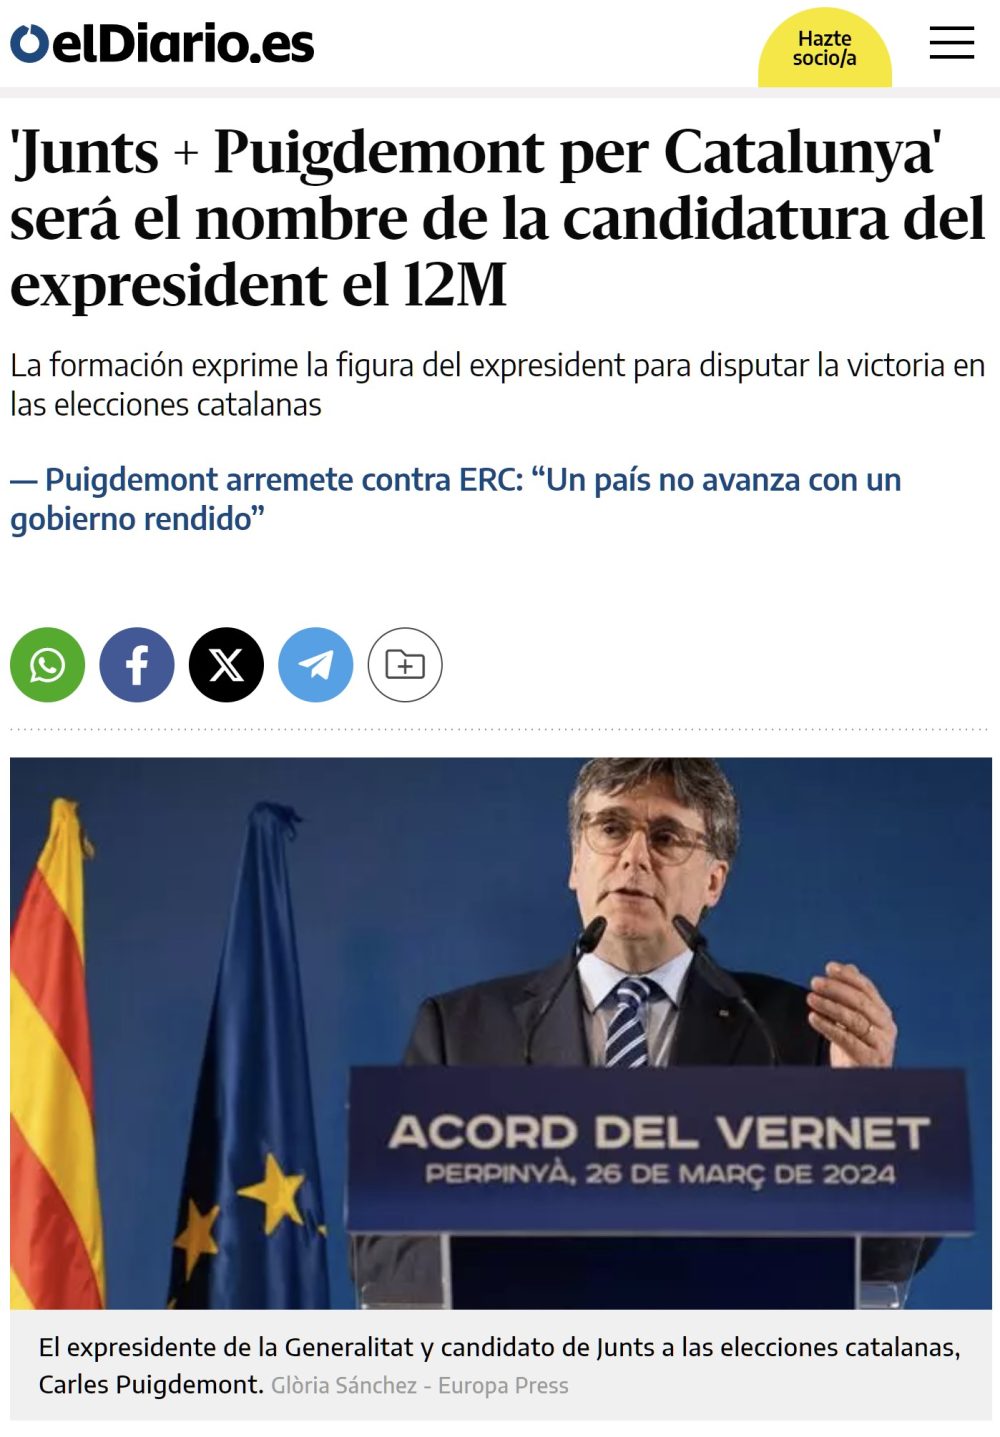 Atentos al nombre de la candidatura de Puigdemont para el 12M...